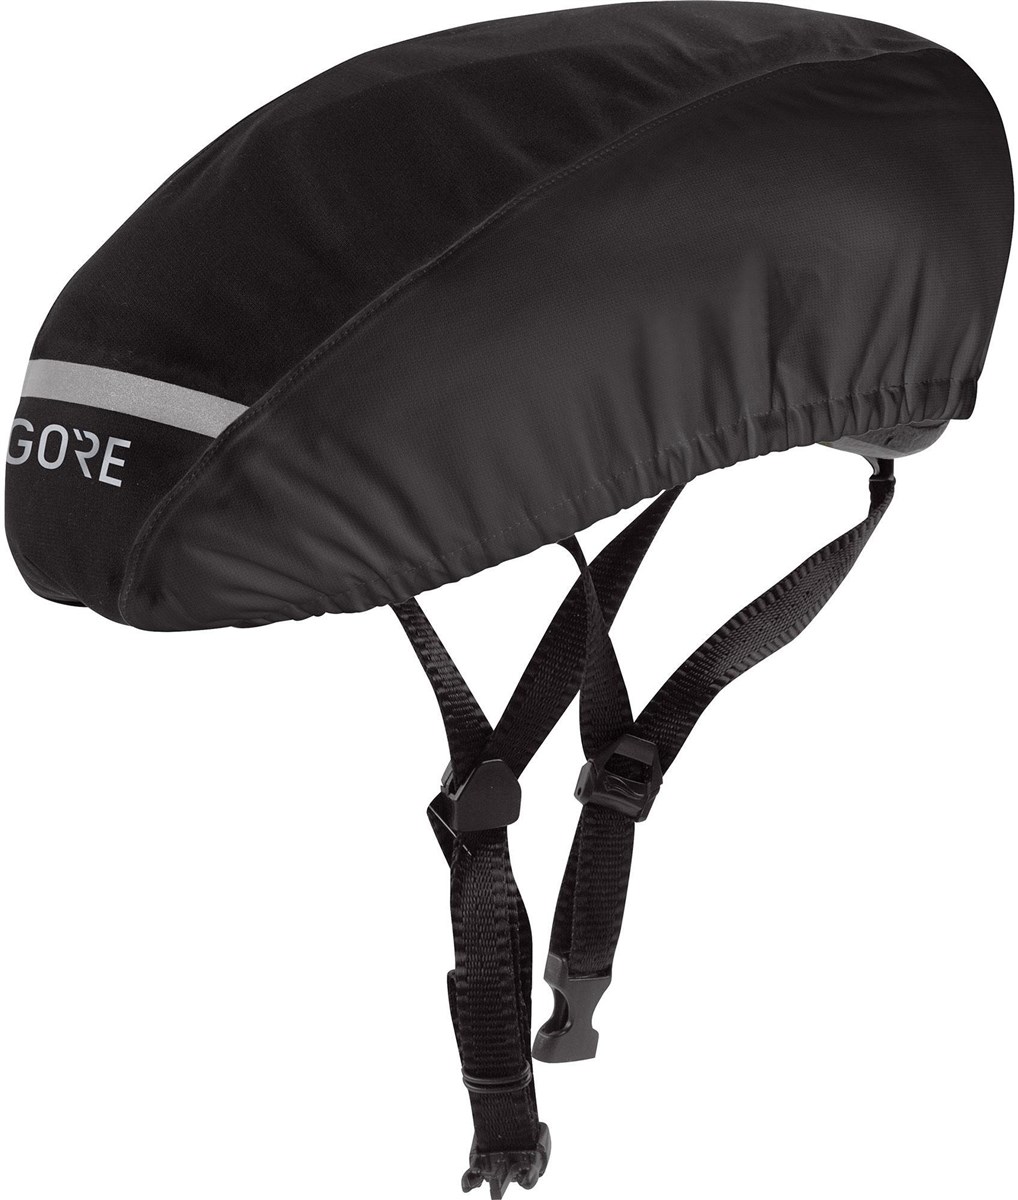 Gore C3 Gore-Tex Helmet Cover product image